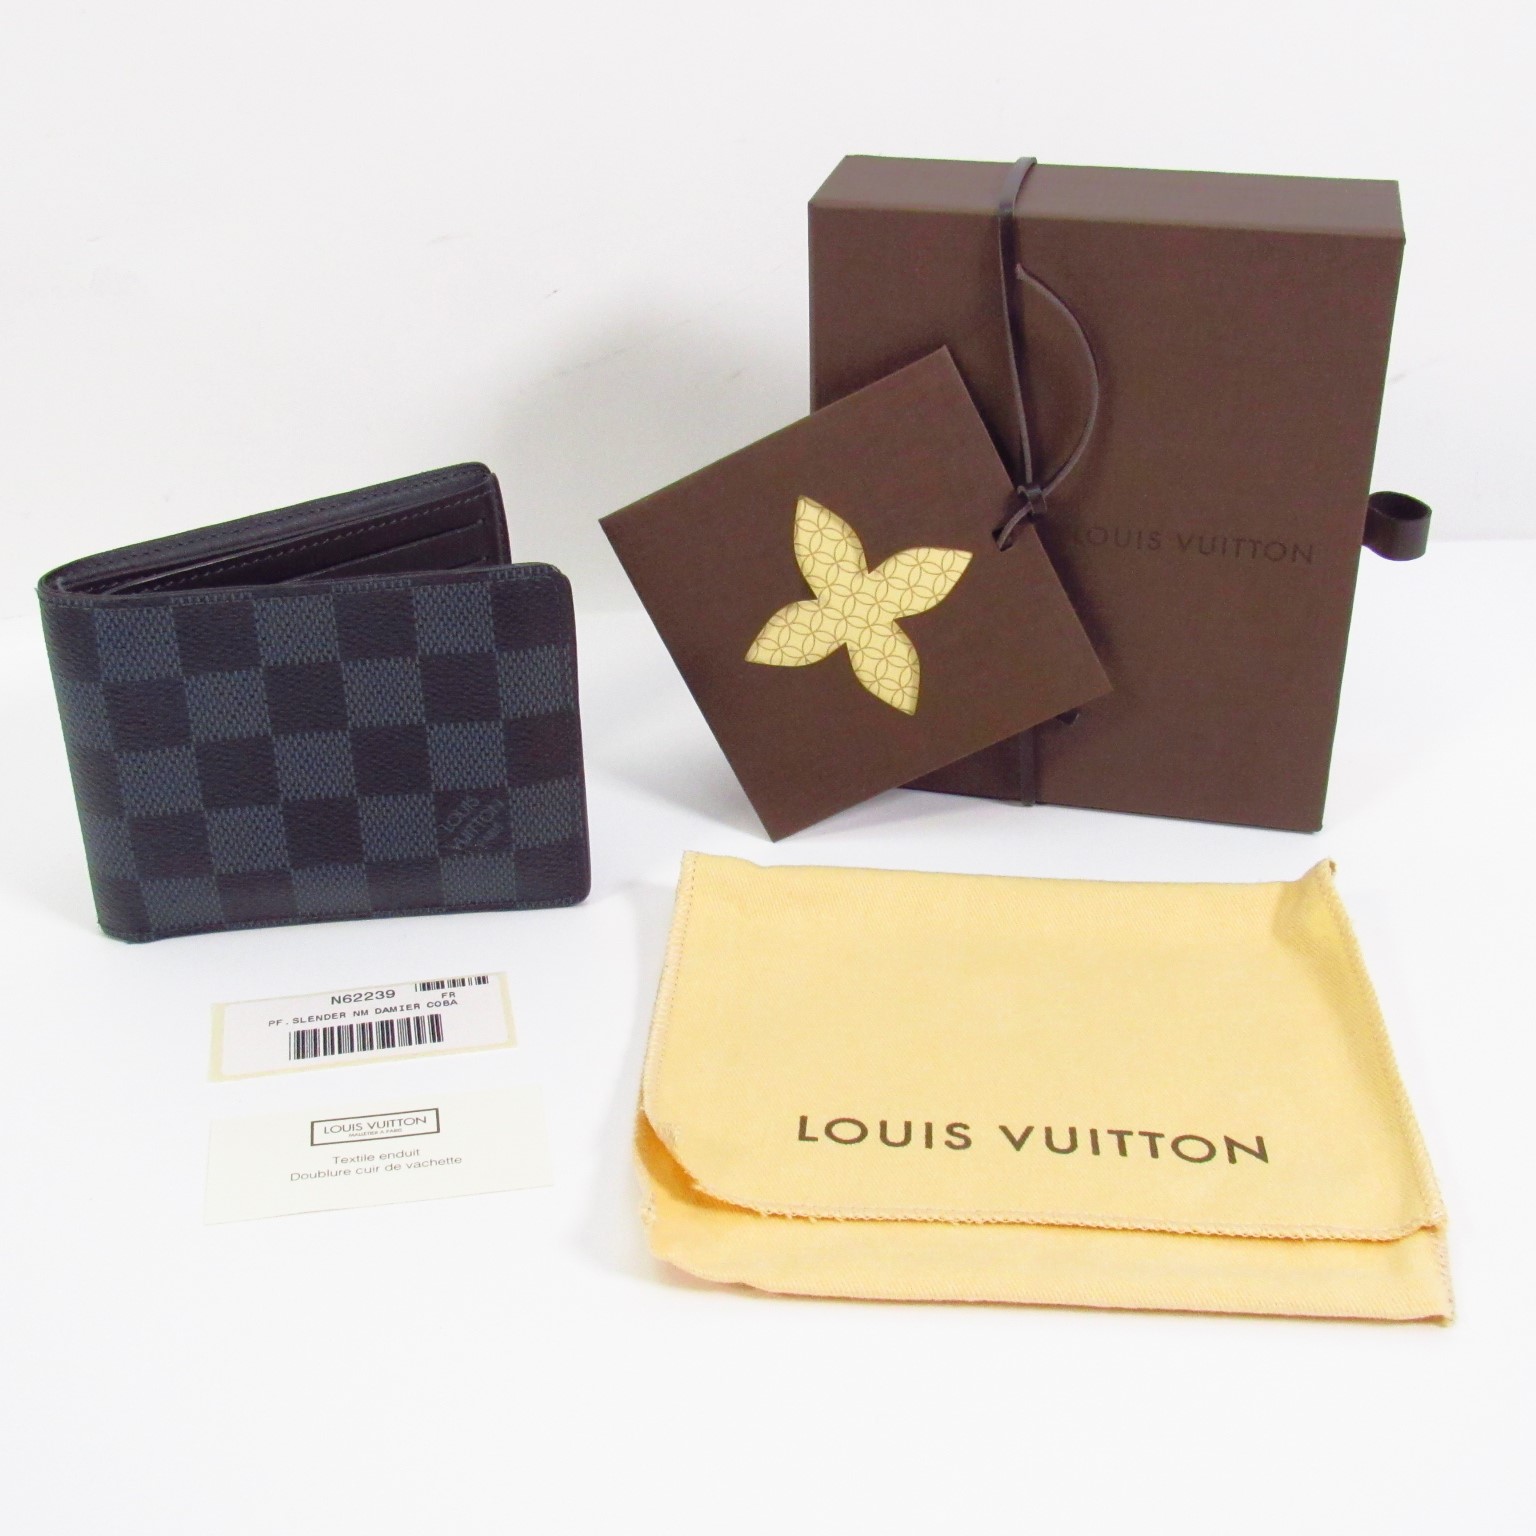 7 Louis Vuitton Wallet Cash Images, Stock Photos, 3D objects